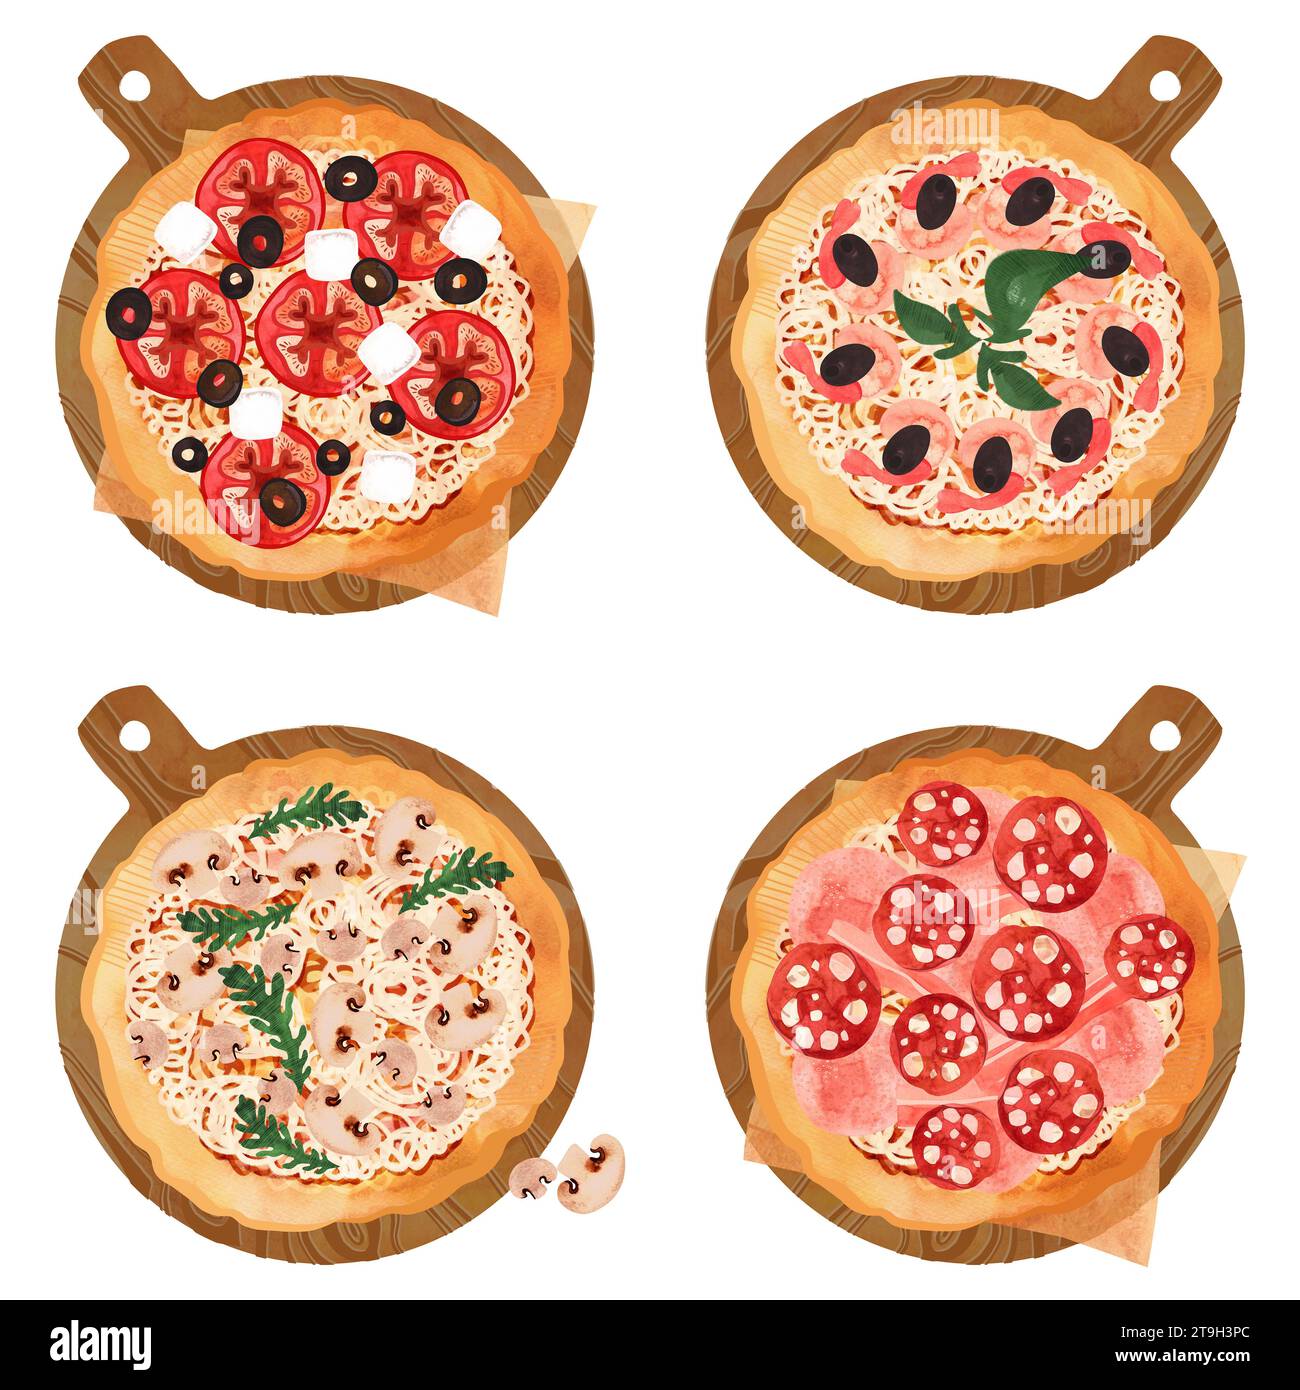 Pizza-Set. Fleisch, Meeresfrüchte, Pilz- und Tomatenpizza mit dickem Teig auf einem hölzernen Servierbrett. Isolierte Aquarellabbildung auf weißem Hintergrund f Stockfoto